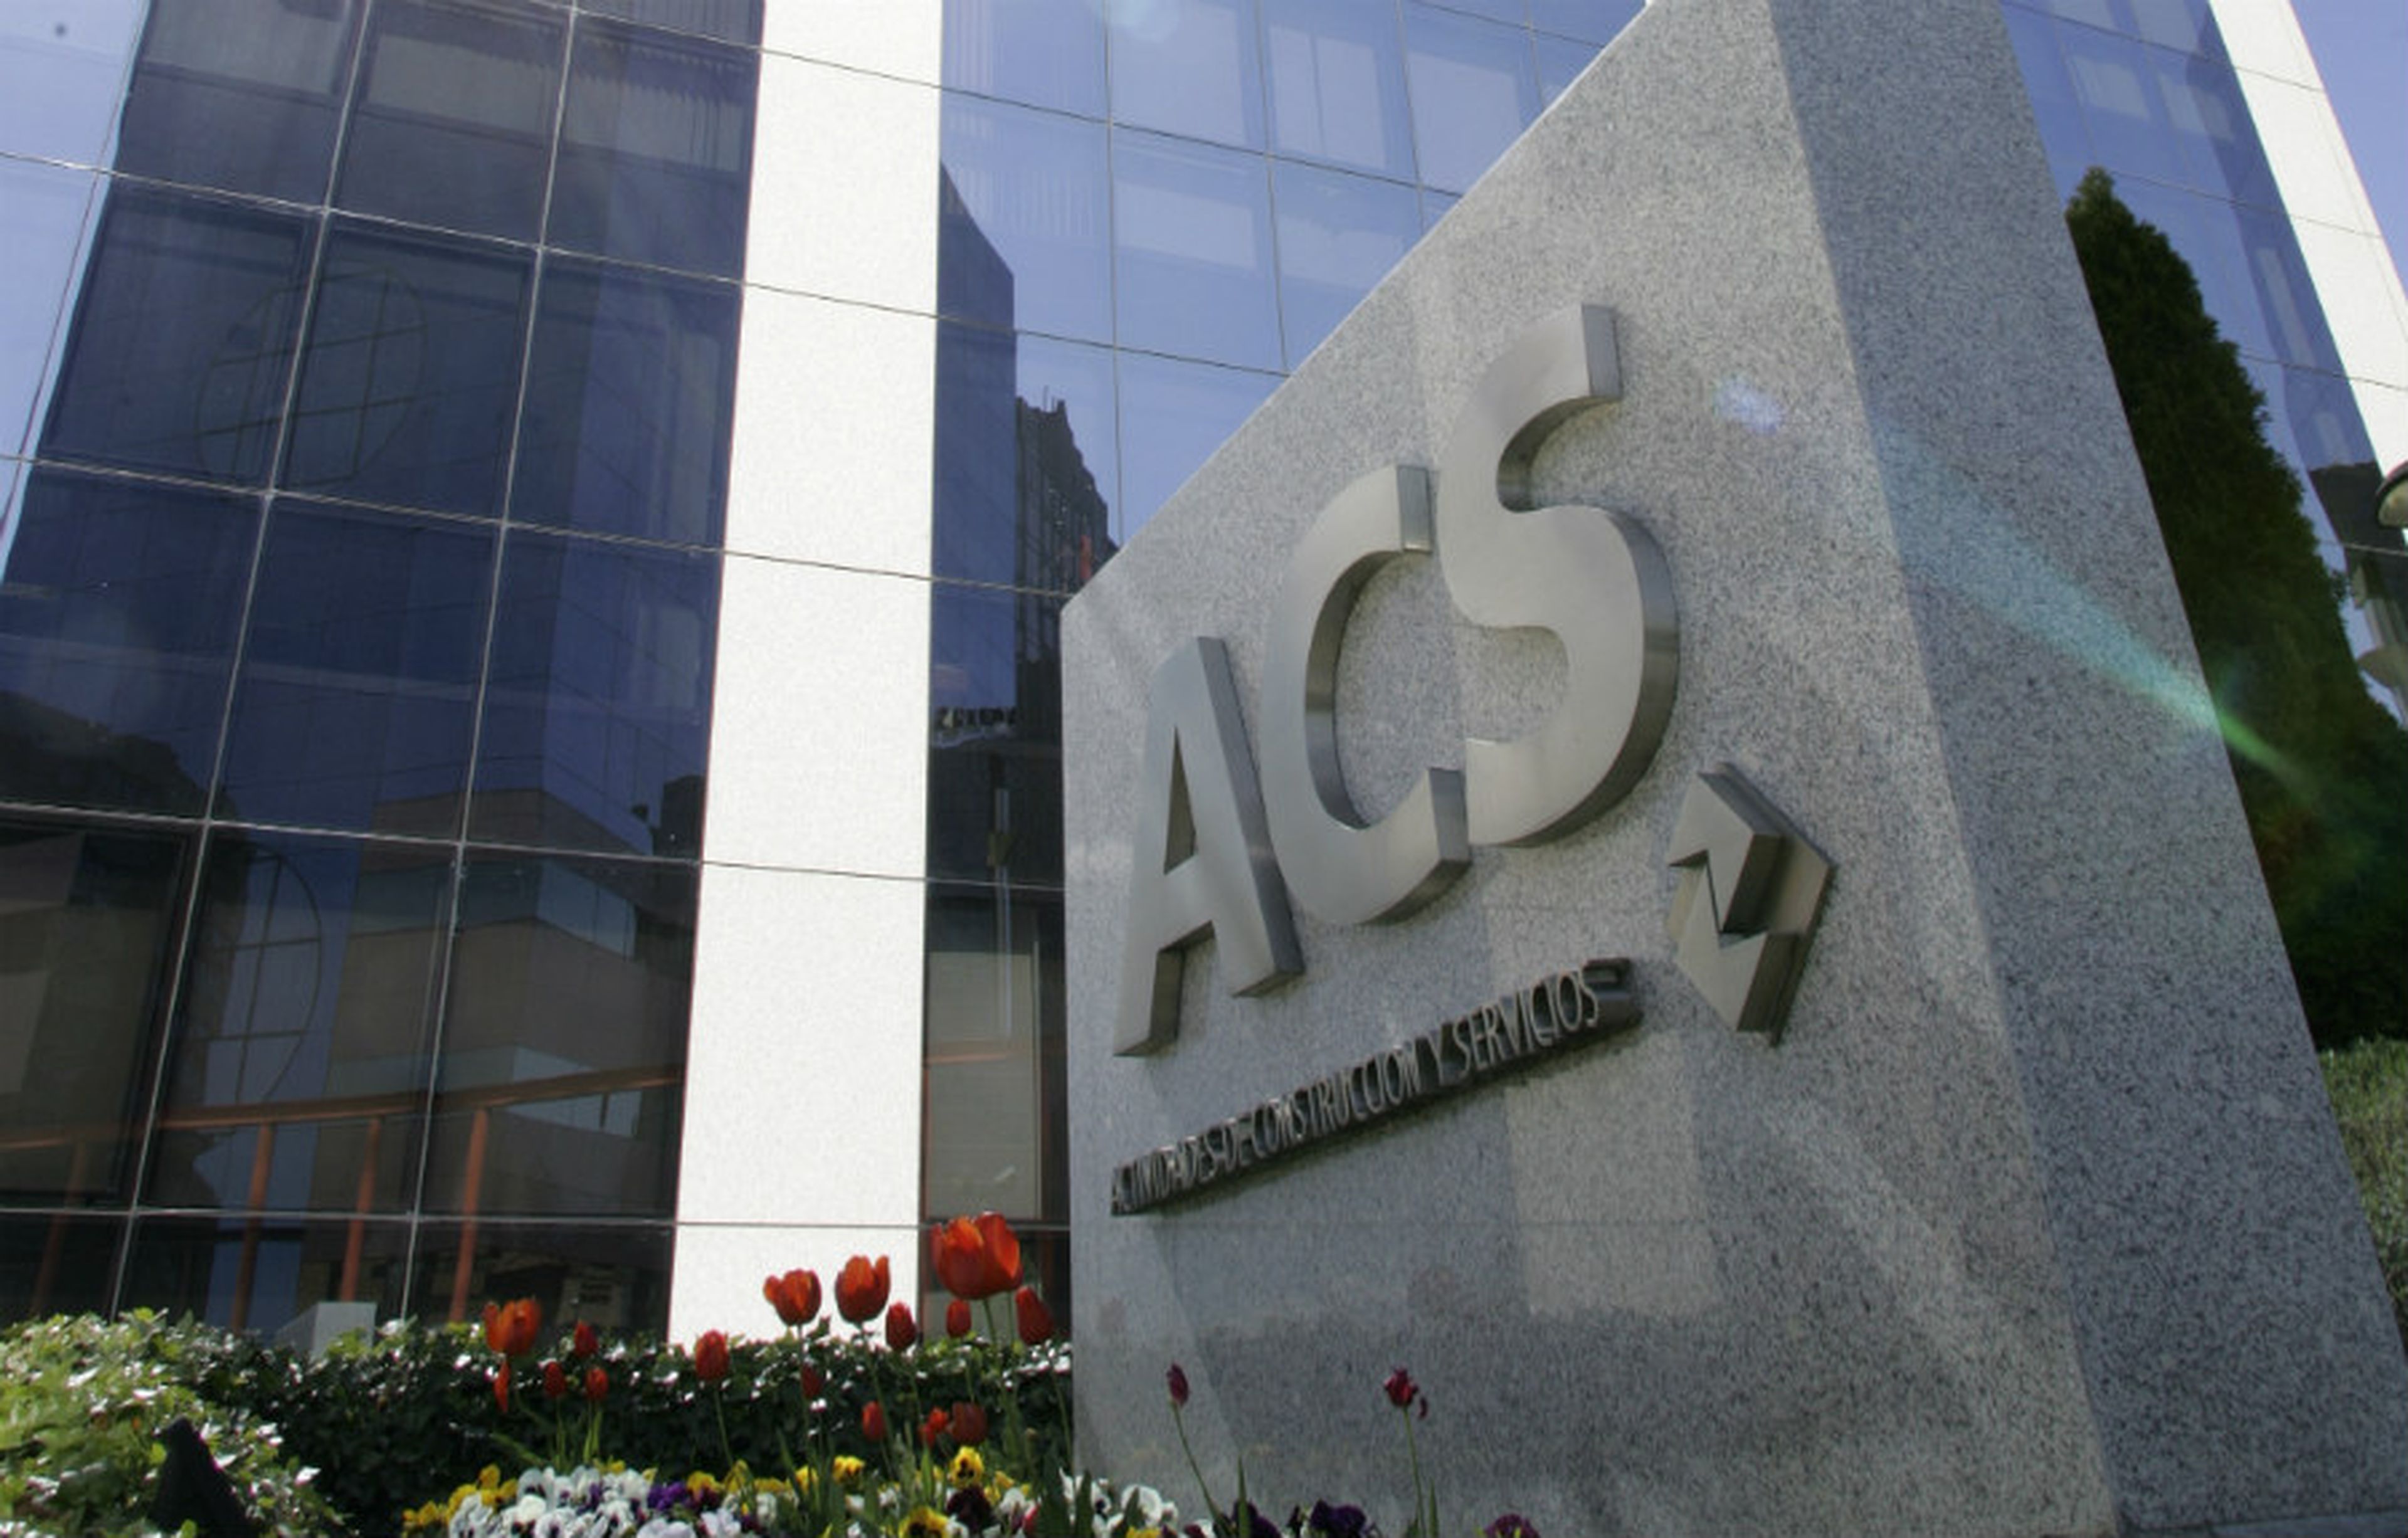 Fachada de la sede de ACS